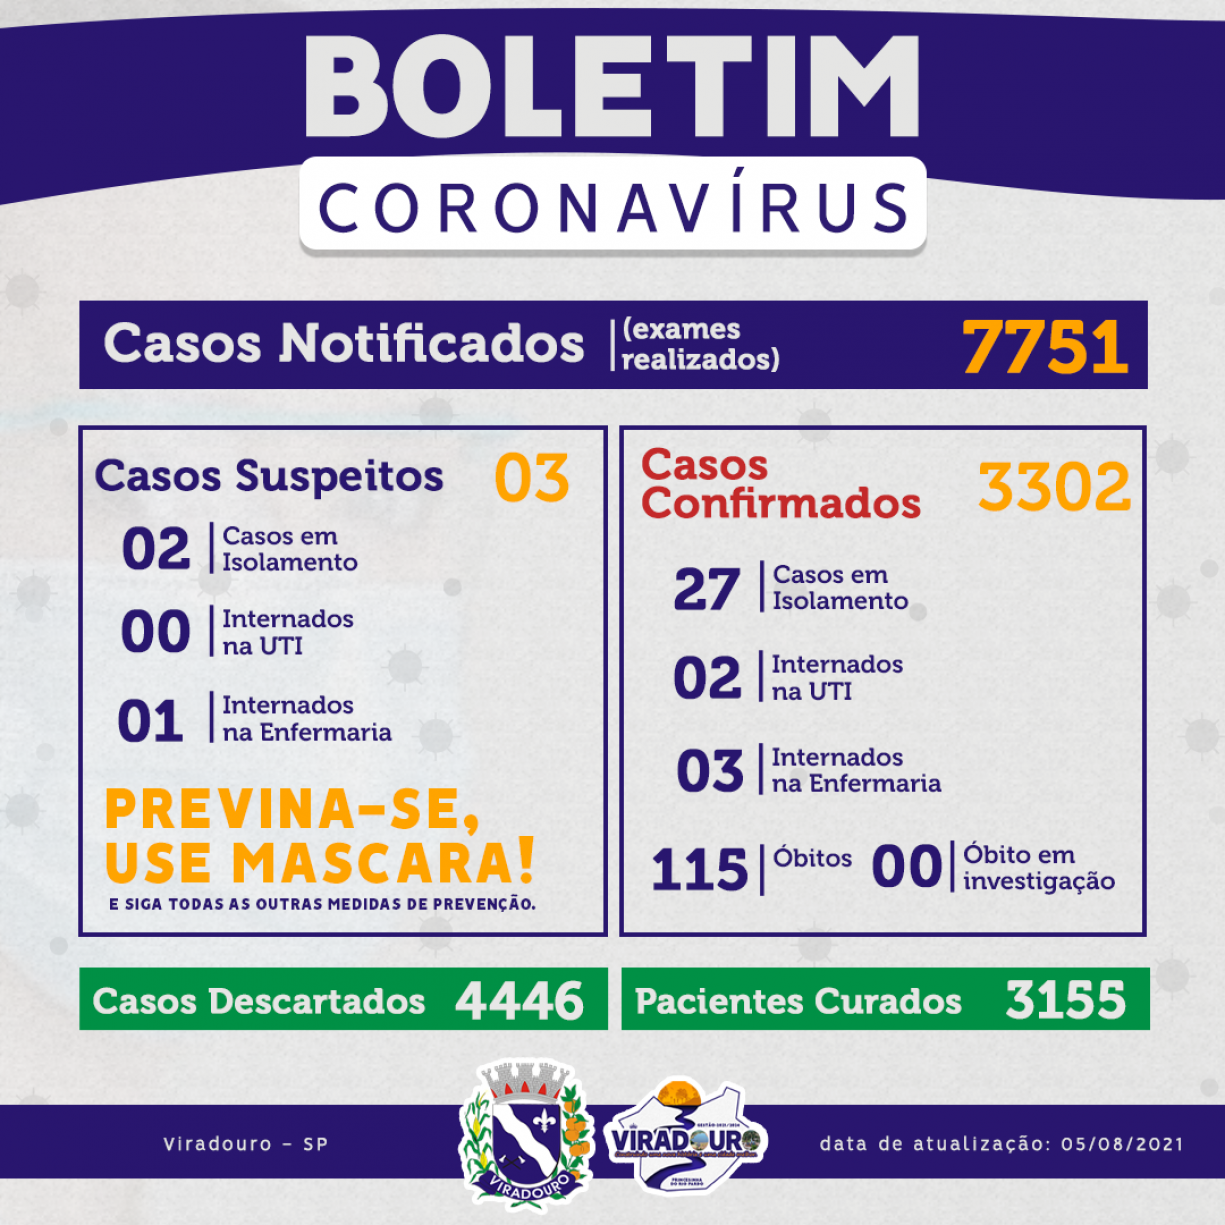 CORONAVÍRUS: BOLETIM EPIDEMIOLÓGICO (ATUALIZAÇÃO 05/08/2021)